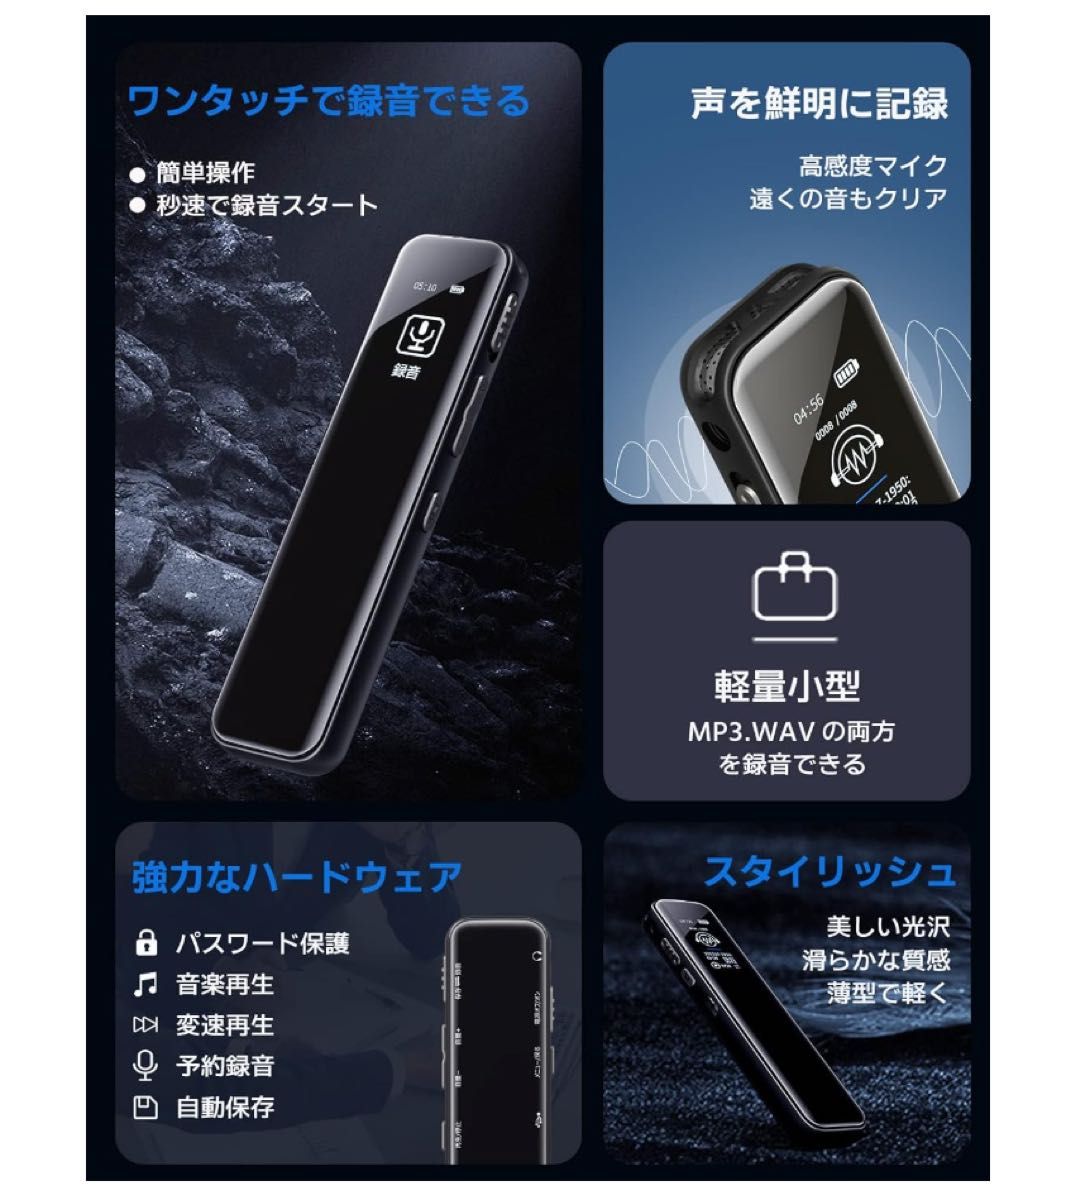 ボイスレコーダー小型16G長時間録音260mAhバッテリー日本語説明書 ブラック